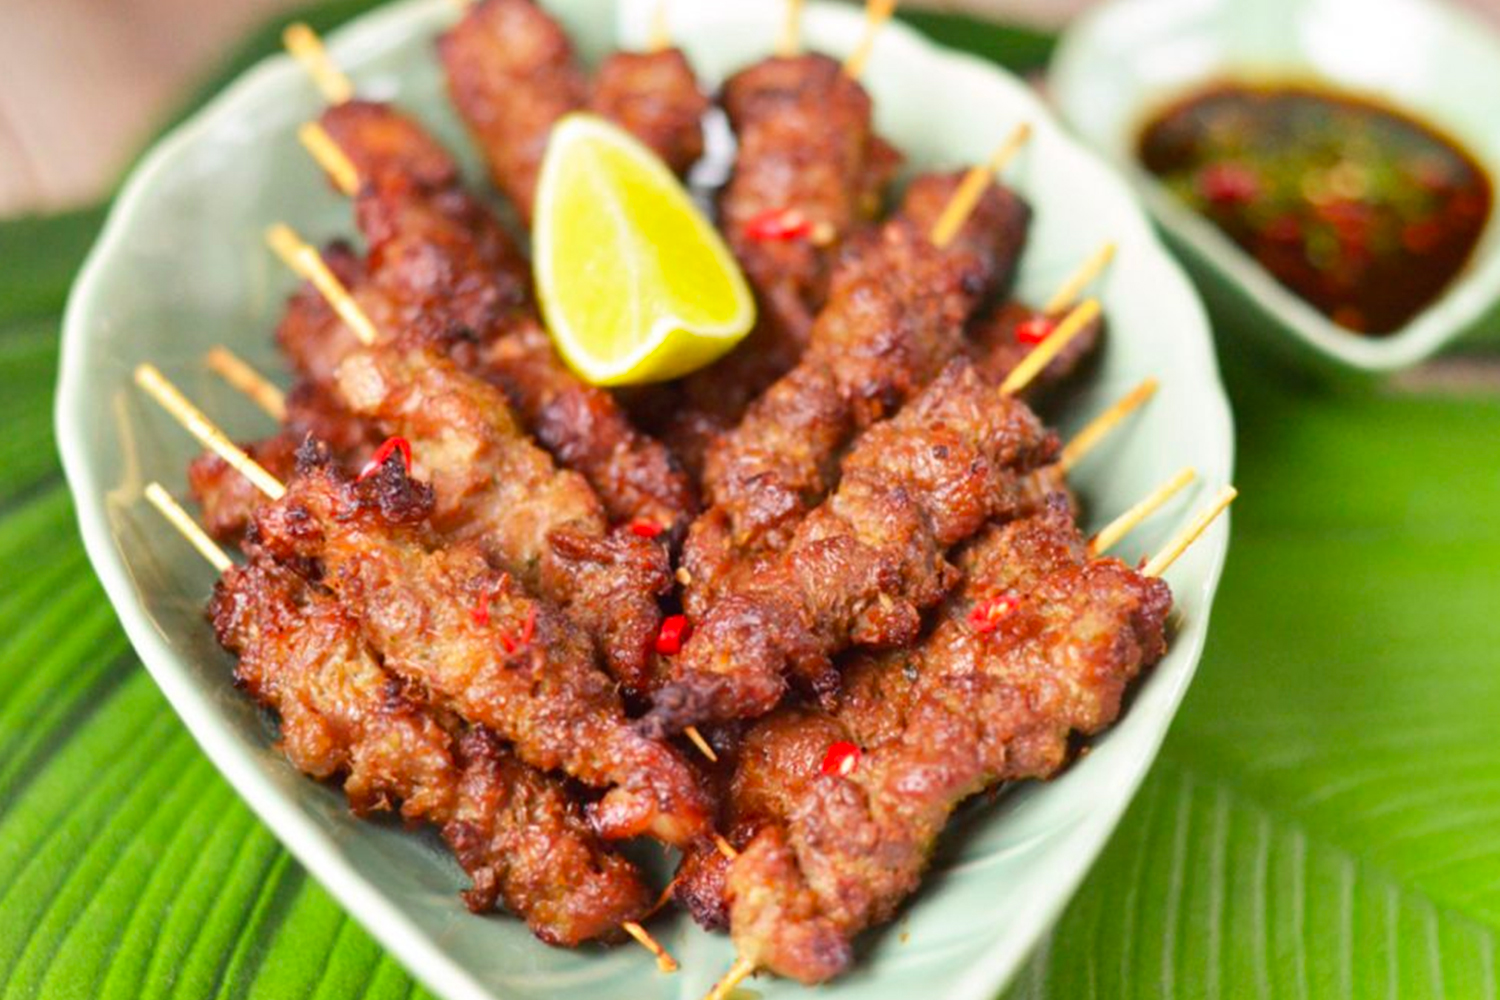 https://asianinspirations.com.au/wp-content/uploads/2021/04/Air-Fryer-RecipesABC_03-Mums-Favourite-Air-Fryer-Pork-Satay.jpg